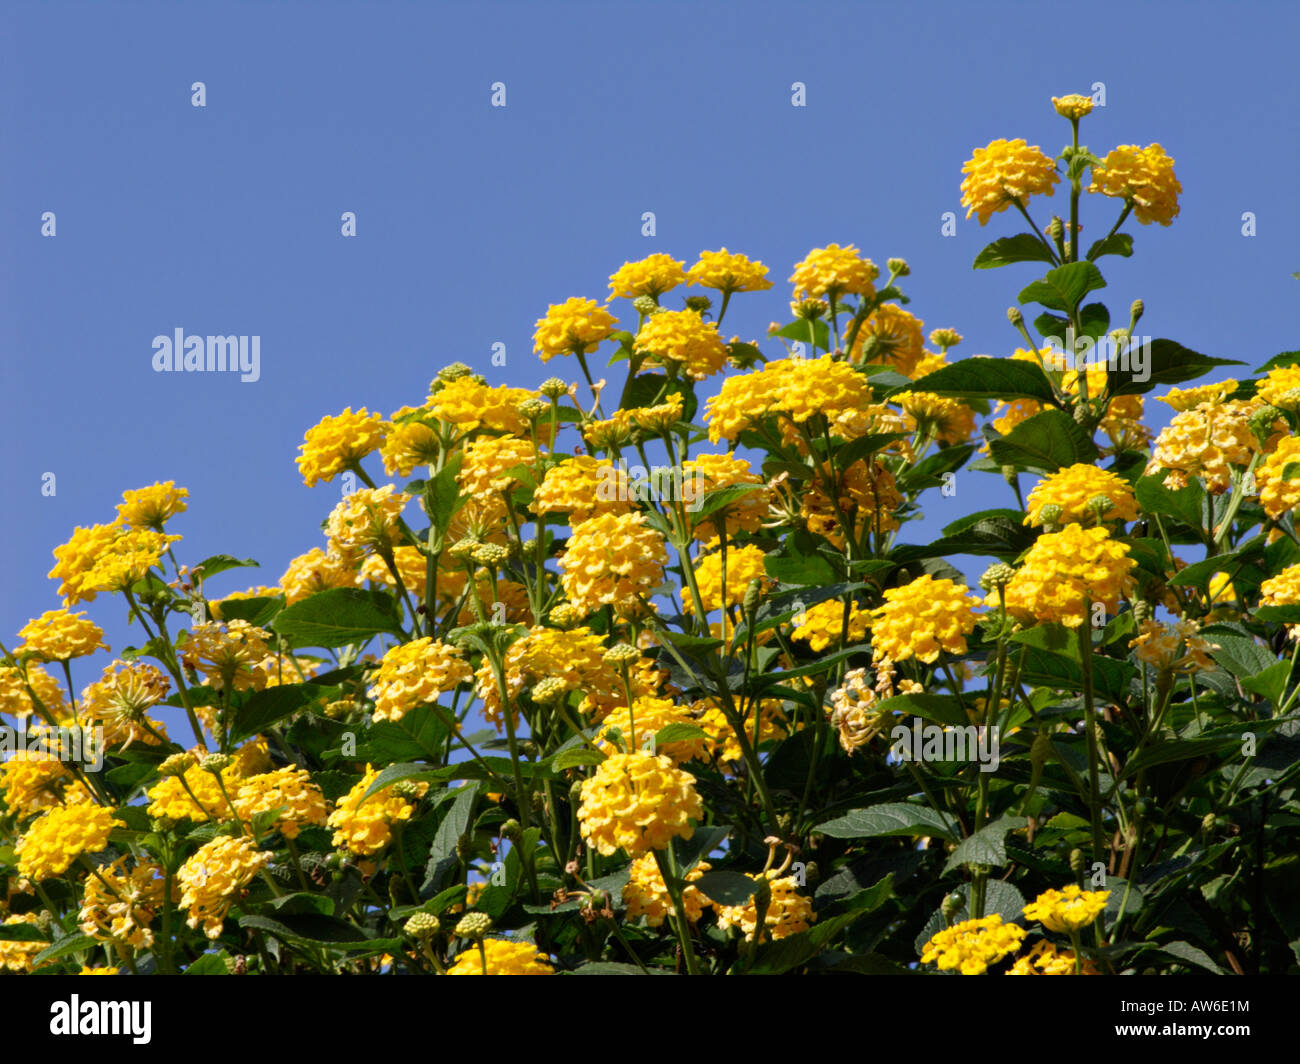 West Indian lantana (Lantana camara 'Yellow King') Stock Photo